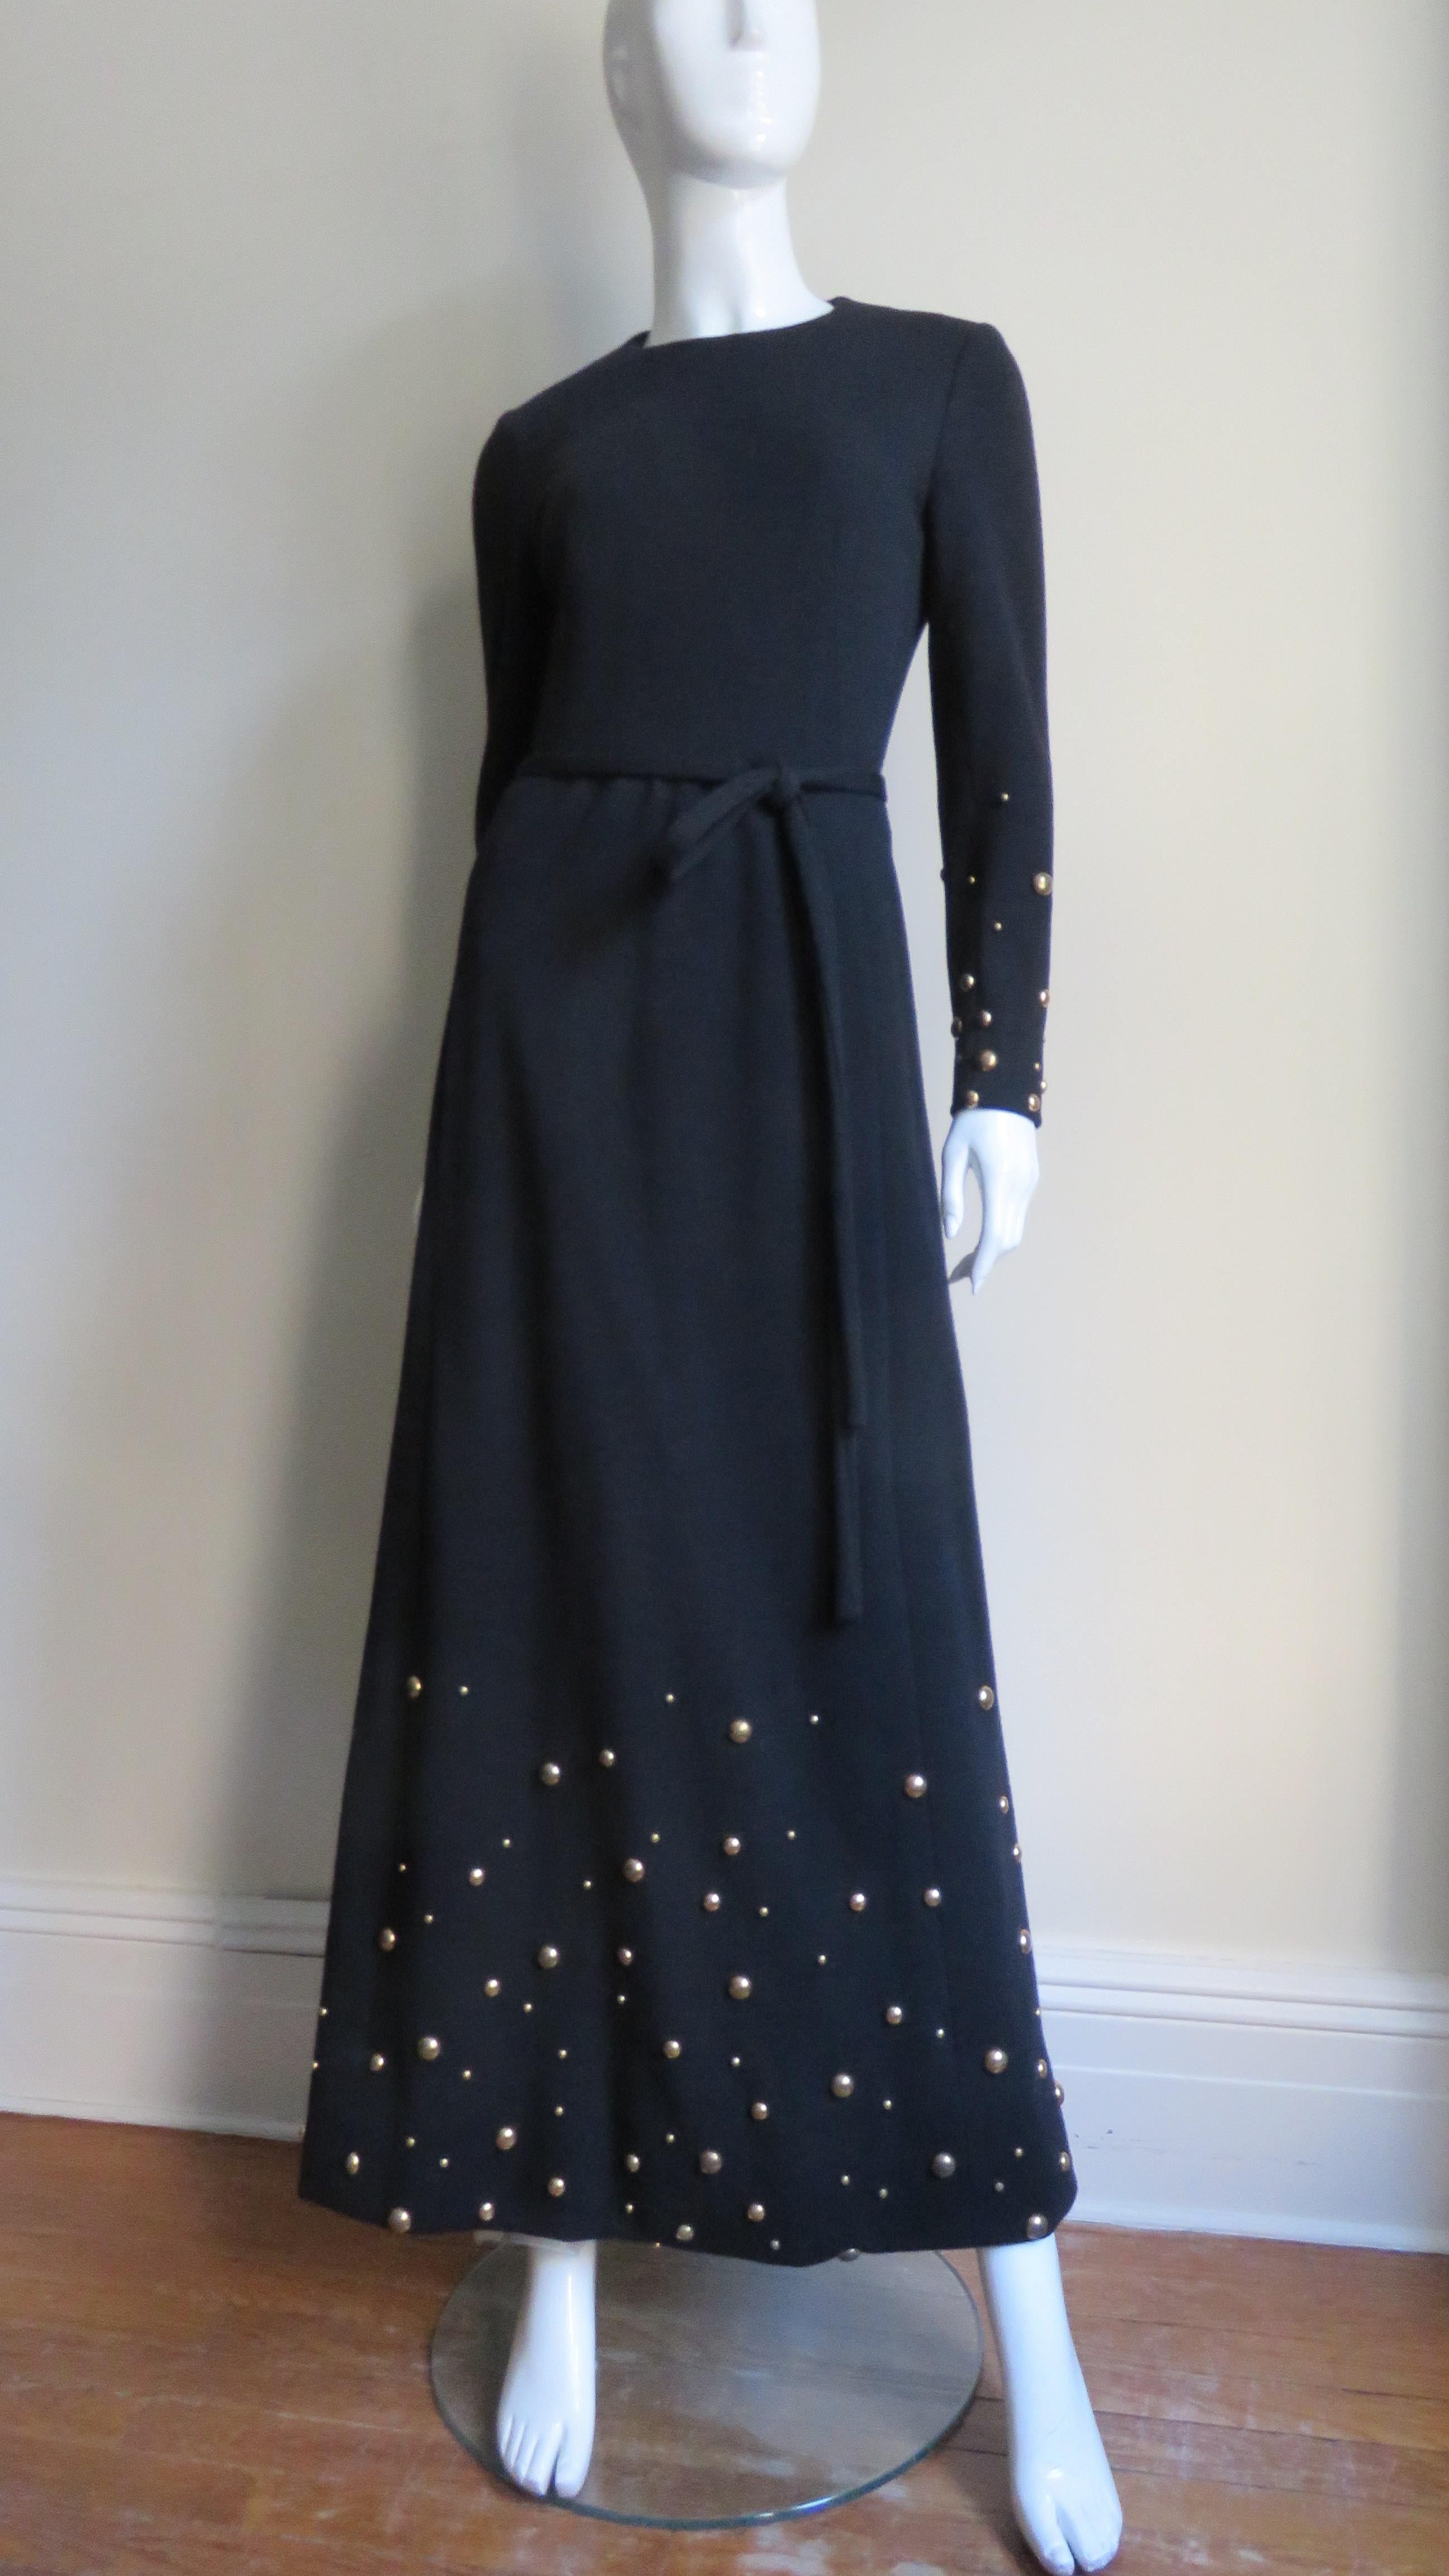 La fabuleuse robe maxi en jersey de laine noir de Givenchy.  Il a des manches longues, une encolure ras du cou et est accompagné d'une étroite ceinture à nouer et d'un châle assorti.  Le bas des manches et la partie de la jupe, ainsi que l'écharpe